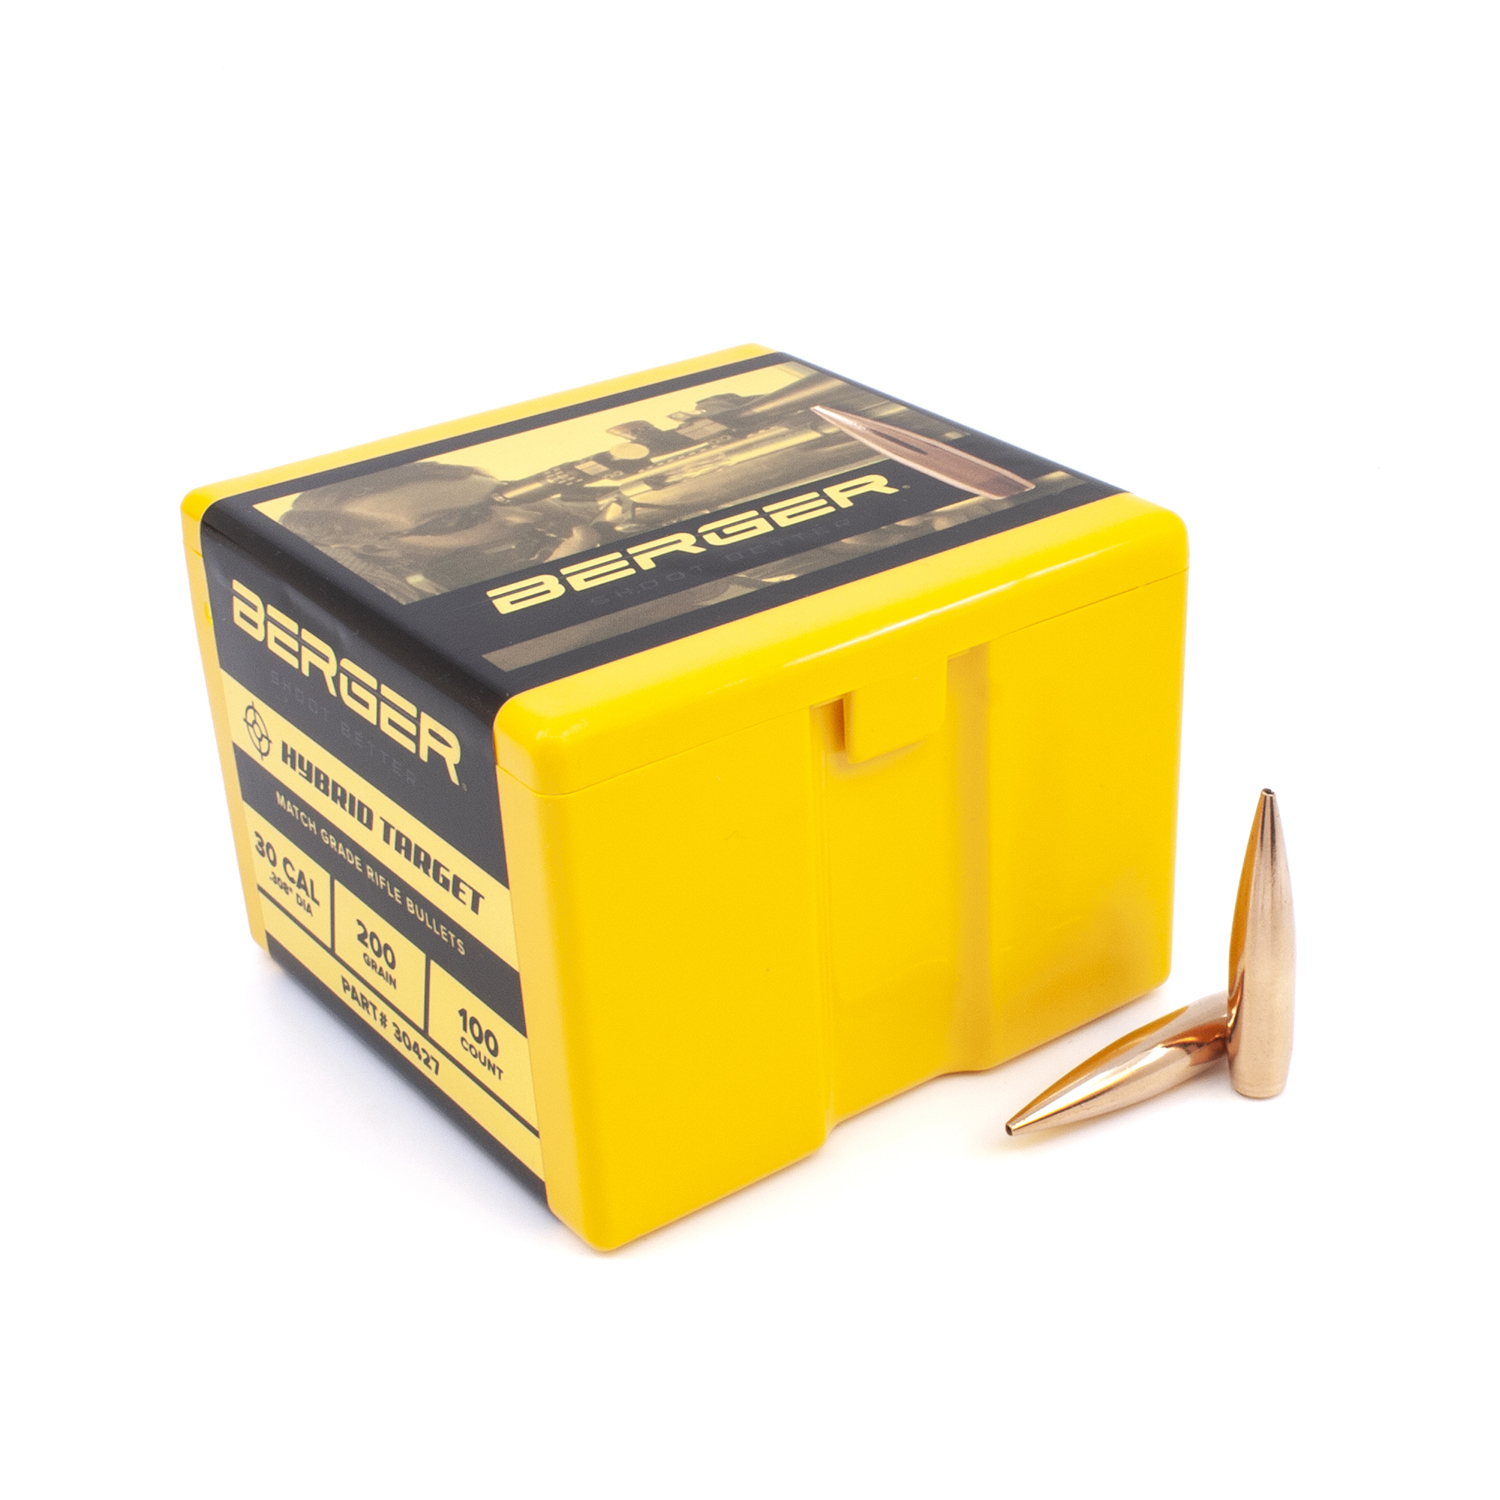 Berger Bullets - .30 cal, 200 gr. Hybrid Target - Box of 100